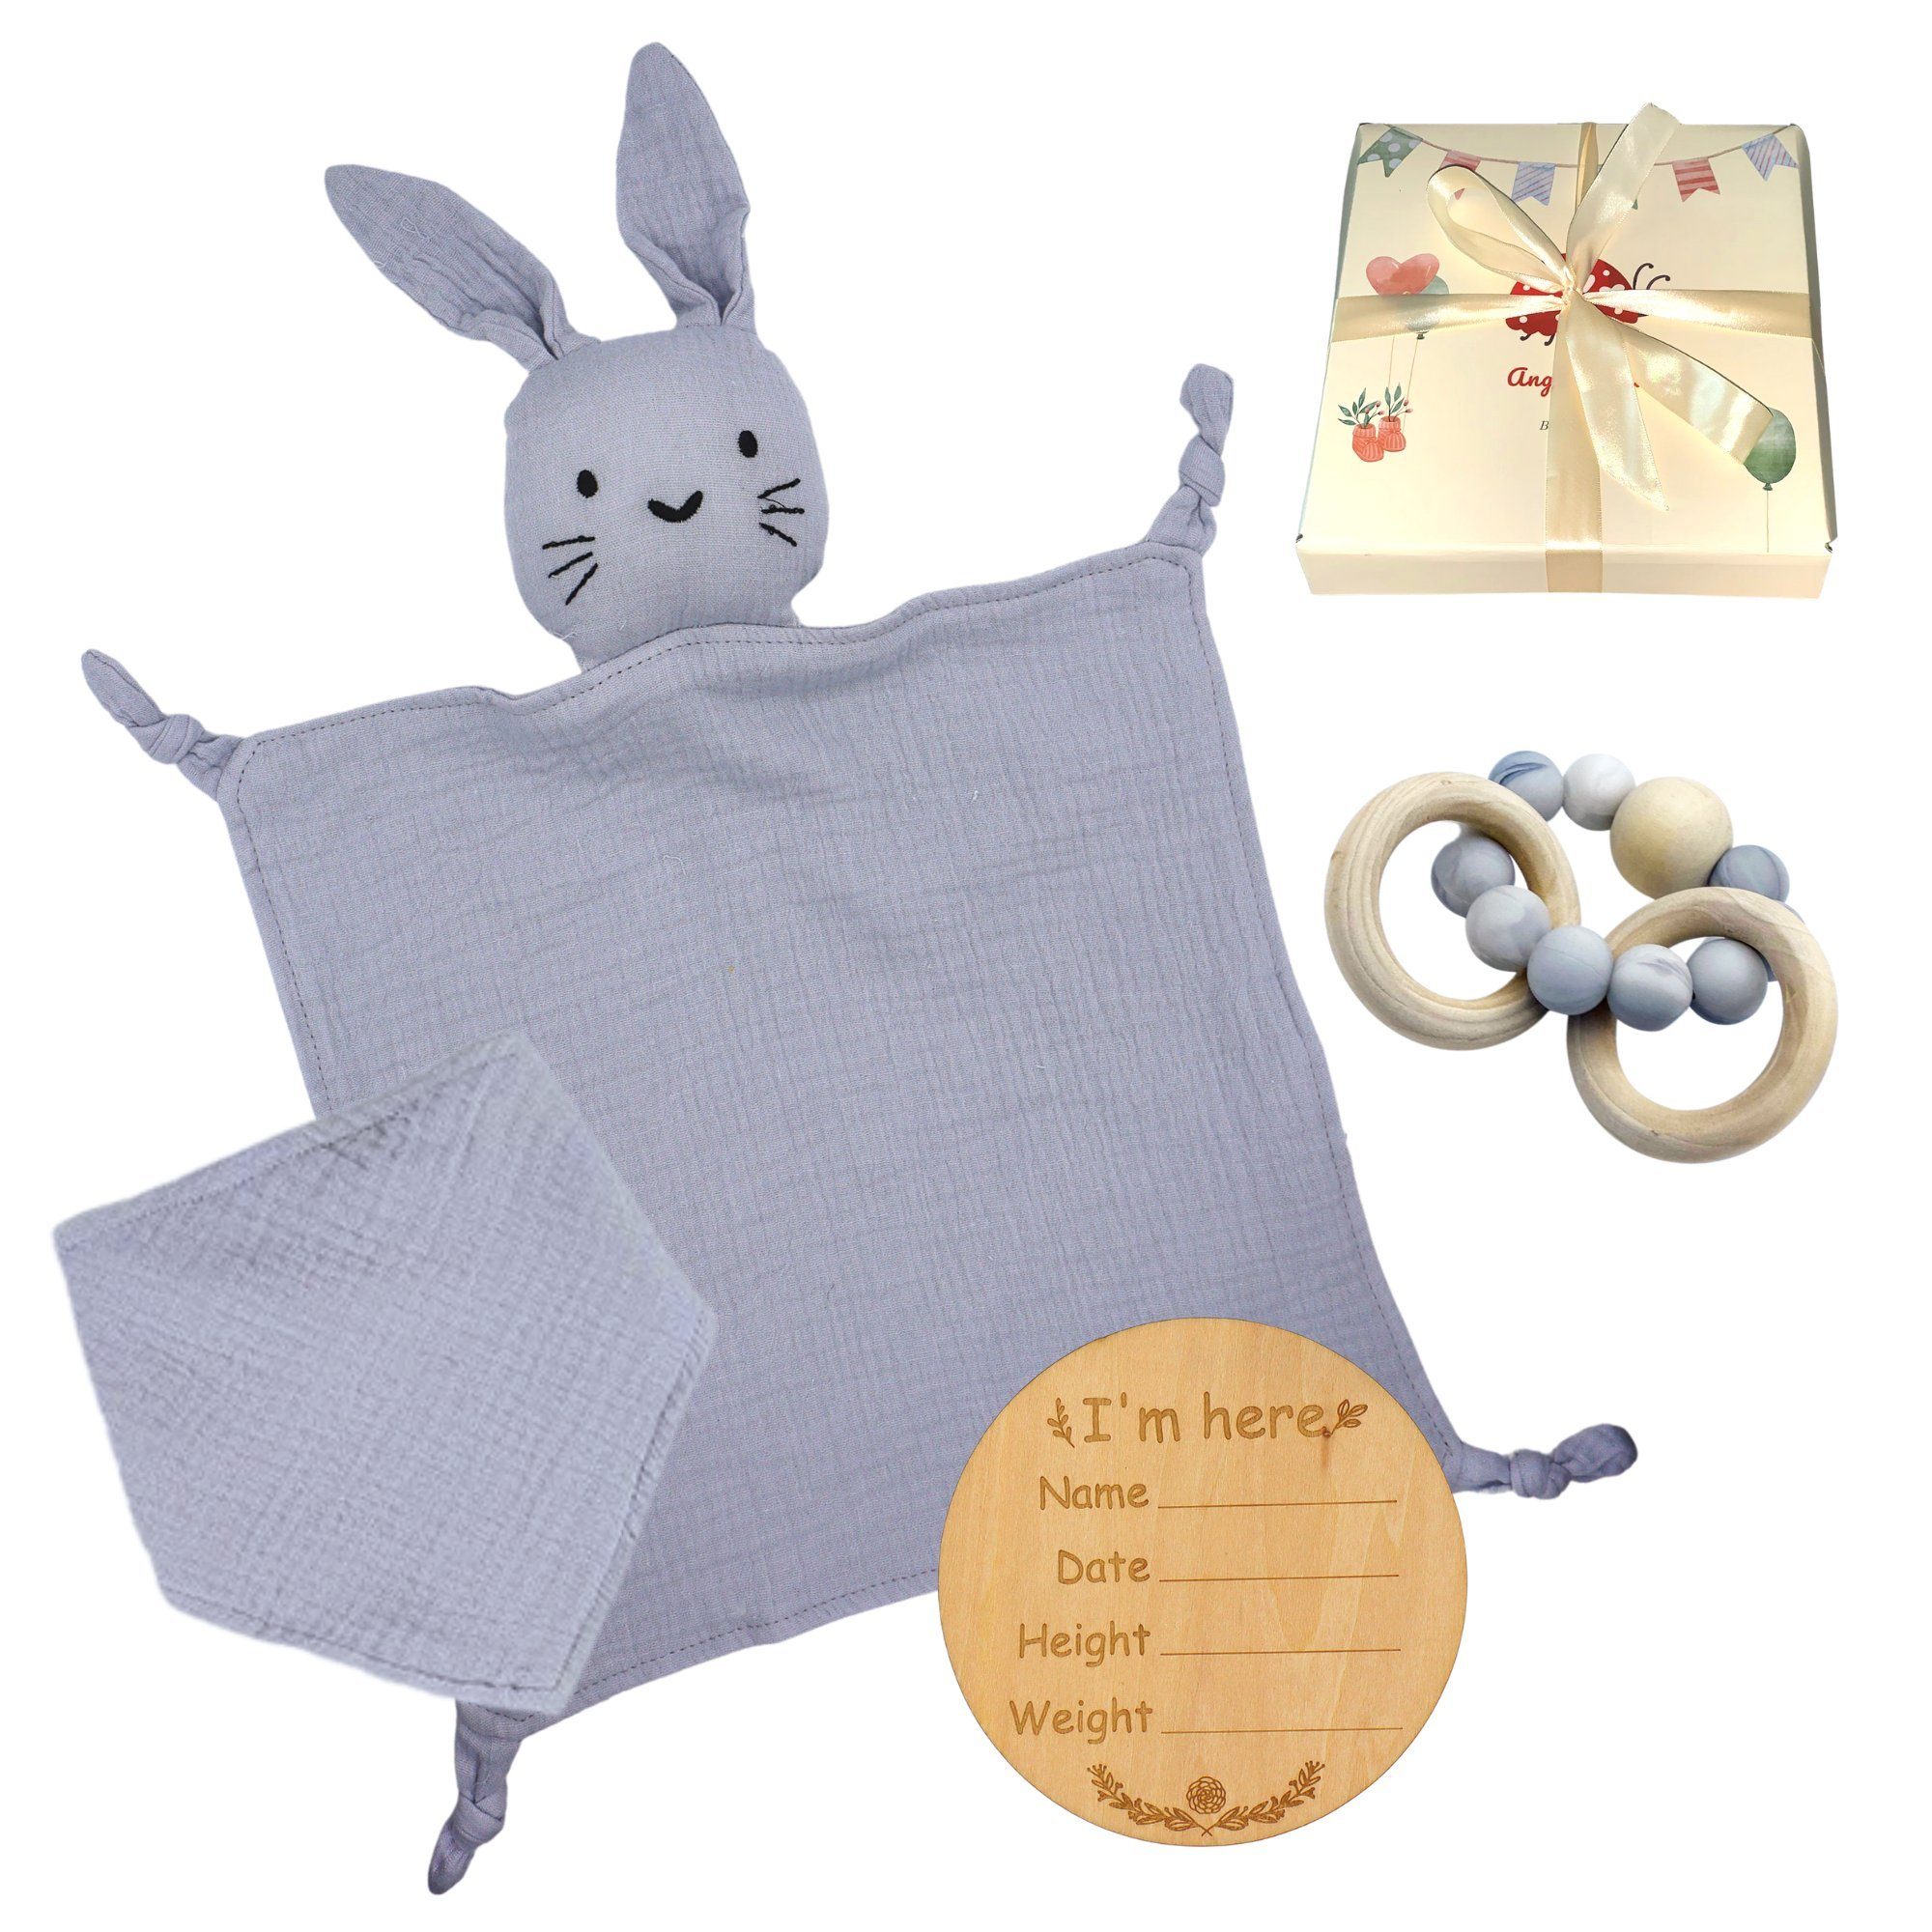 Angel's Baby Neugeborenen-Geschenkset Geschenk zur Geburt mit Schnuffeltuch, Beißring (Set, mit Geschenkverpackung + Grußkarte) 4 Teile + gratis Grußkarte, Geschenkbox Blau